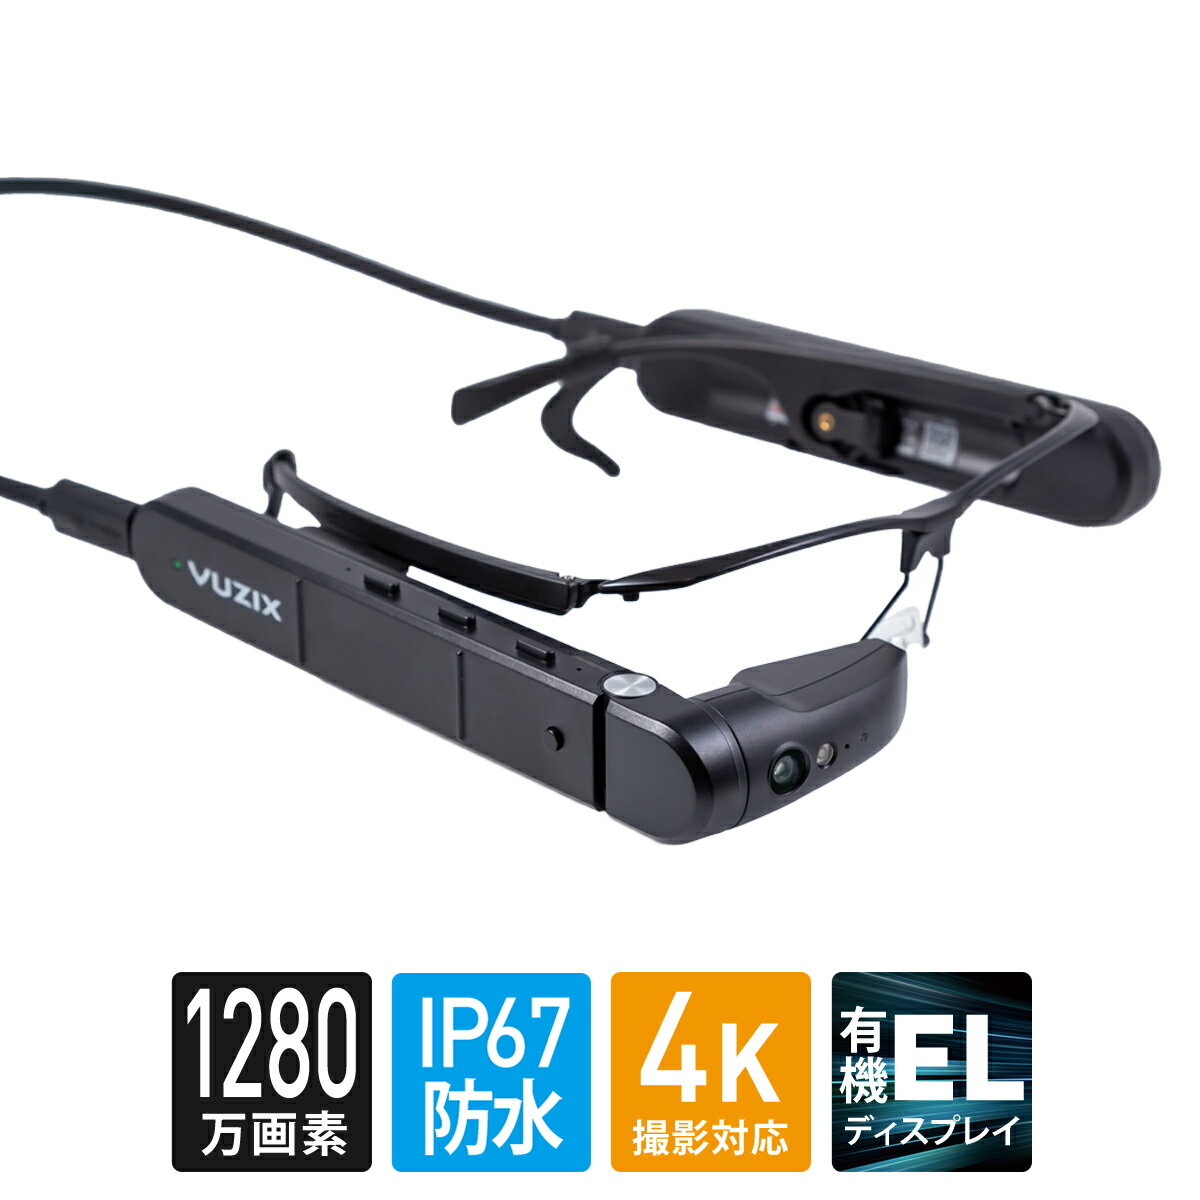 VUZIX M400 Smart Glasses ビュージックス M400 スマートグラス 750mAhバッテリー版 IP67 防水防塵対応 Android OS Qualcomm XR1 CPU内蔵 有機ELディスプレイ オートフォーカス1280万画素カメラ フラッシュライト ノイズキャンセリングマイク スピーカー搭載 472T00011